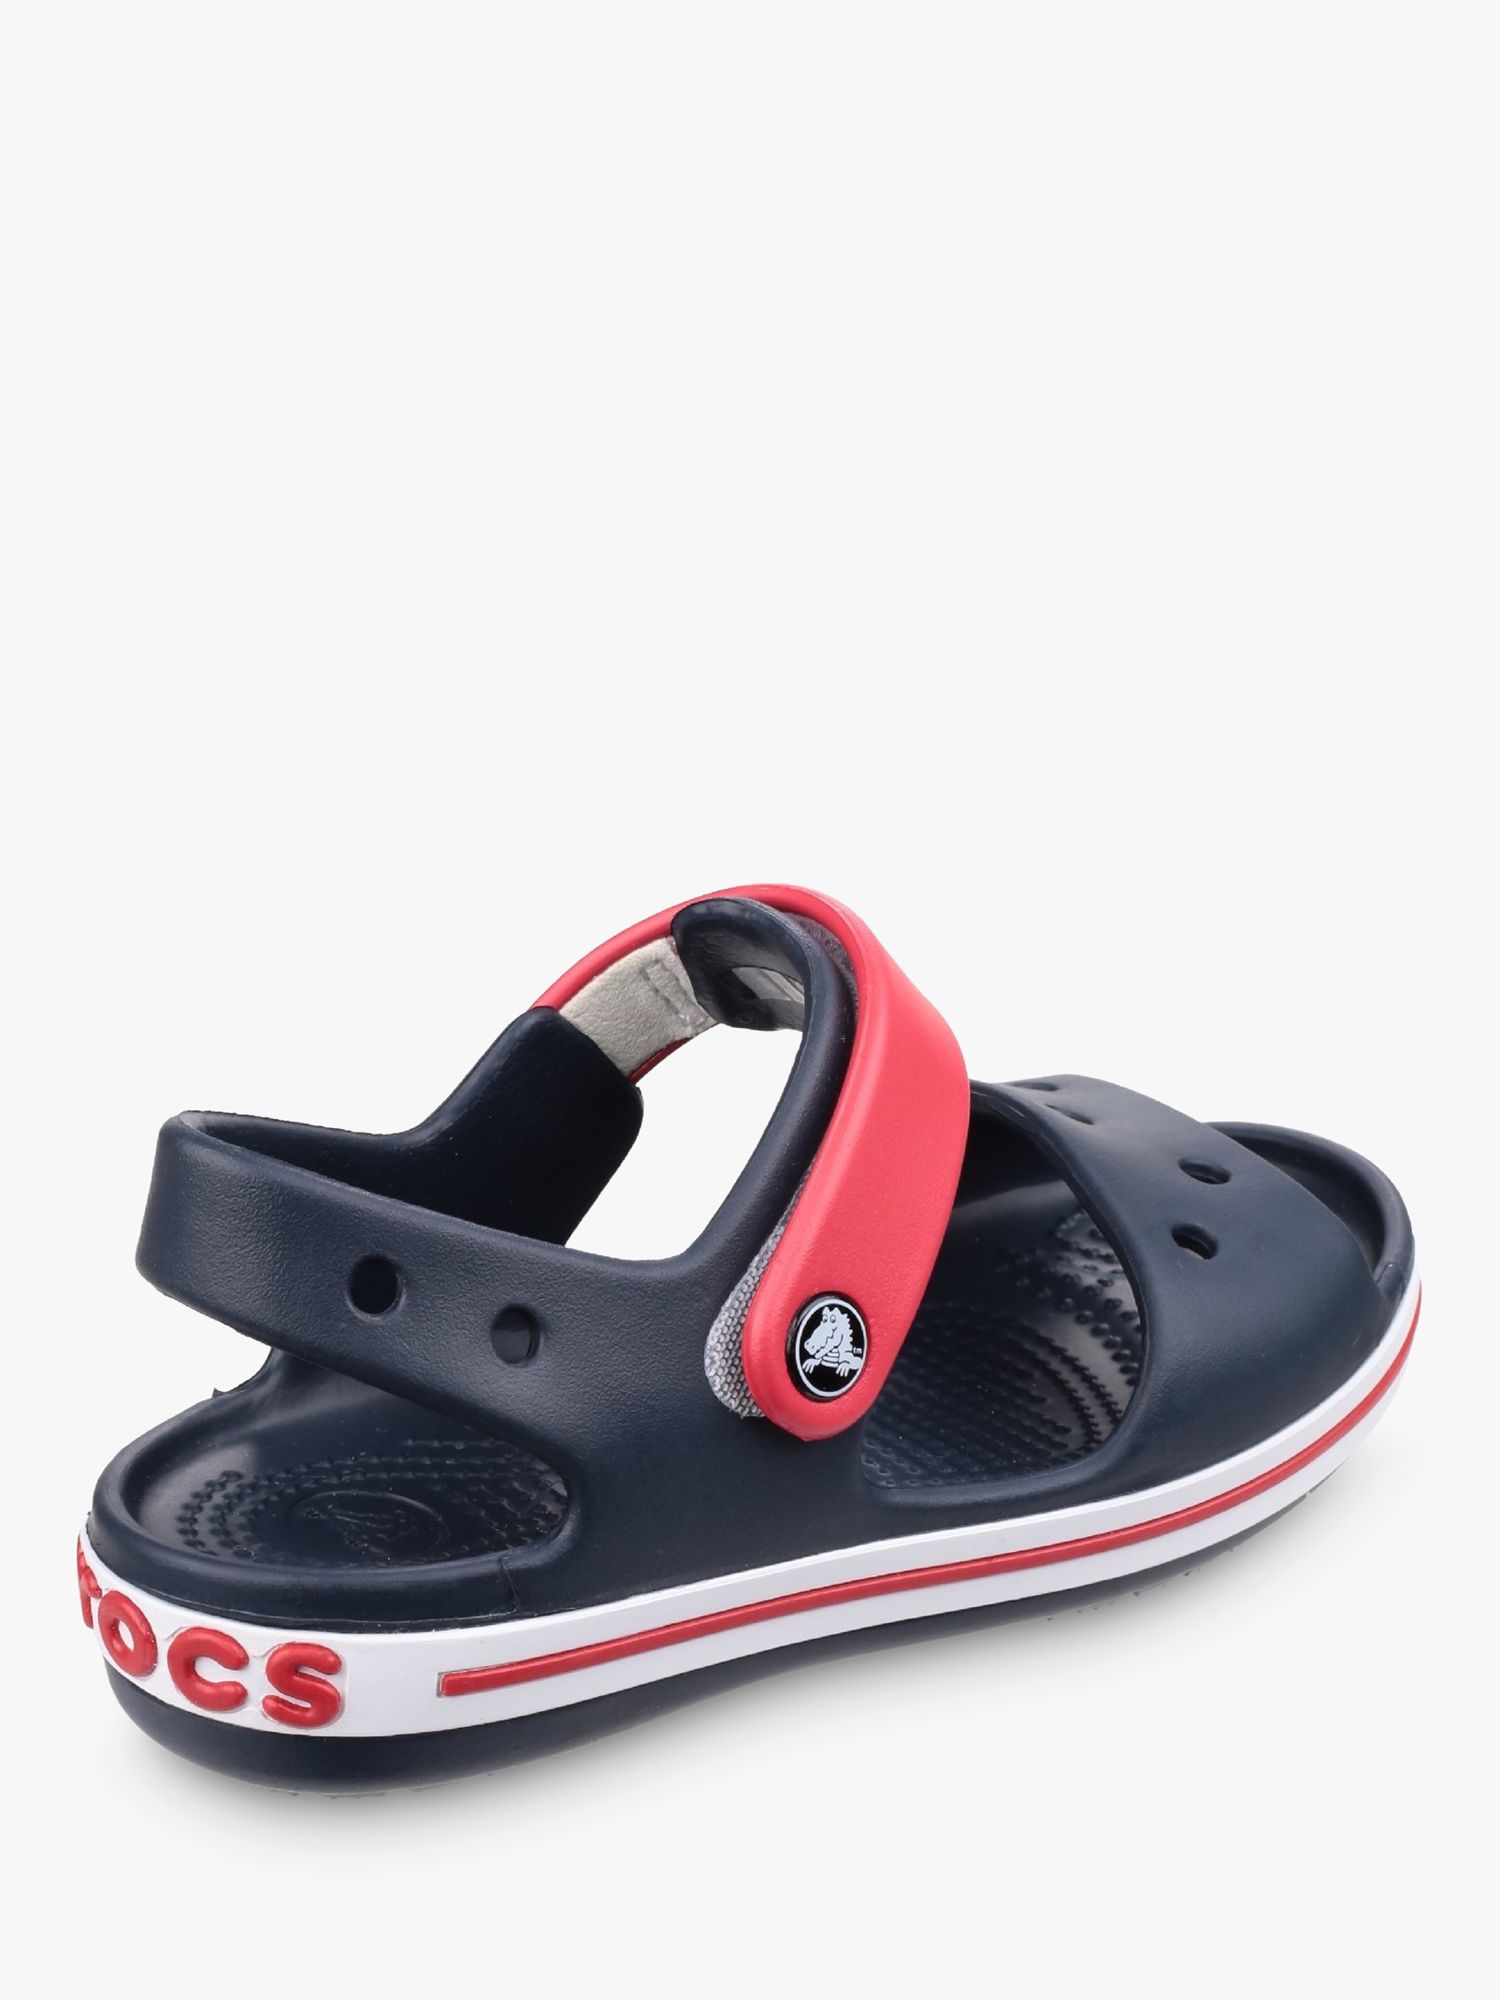 Crocs Kids' Crocband Sandals, Navy/Red, 4 Jnr